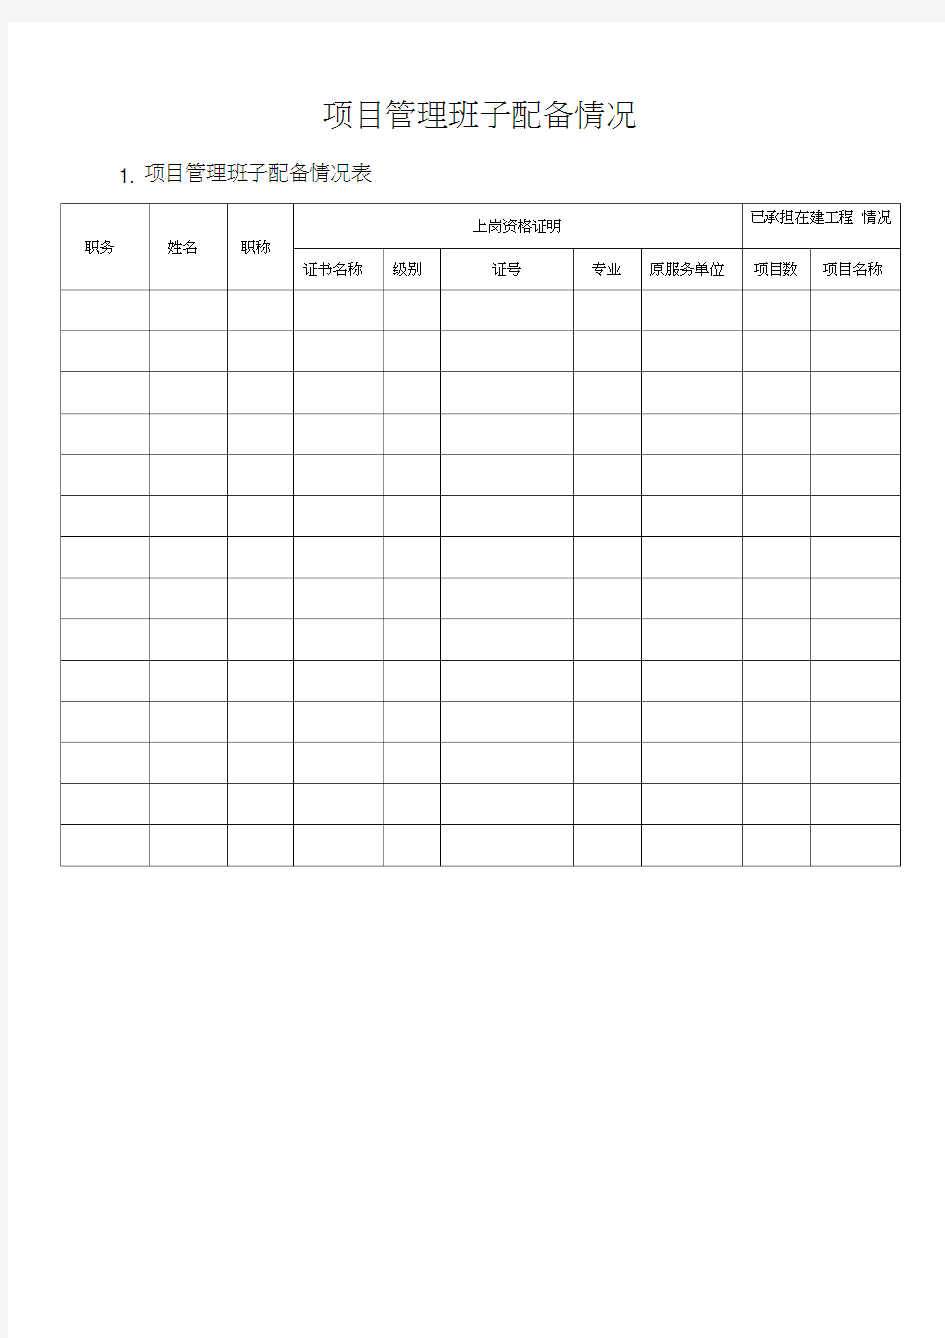 (完整版)项目管理班子人员配备表及相关说明